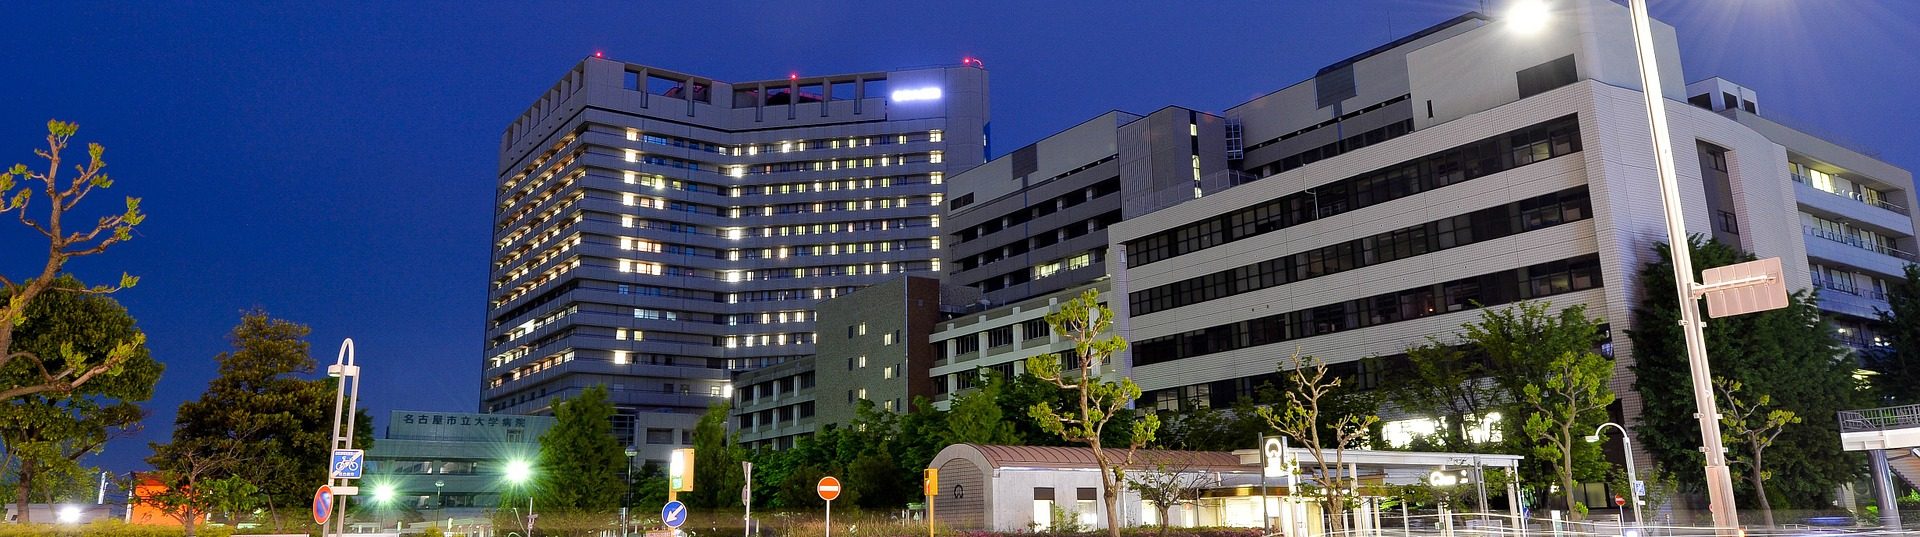 ziekenhuis in de nacht